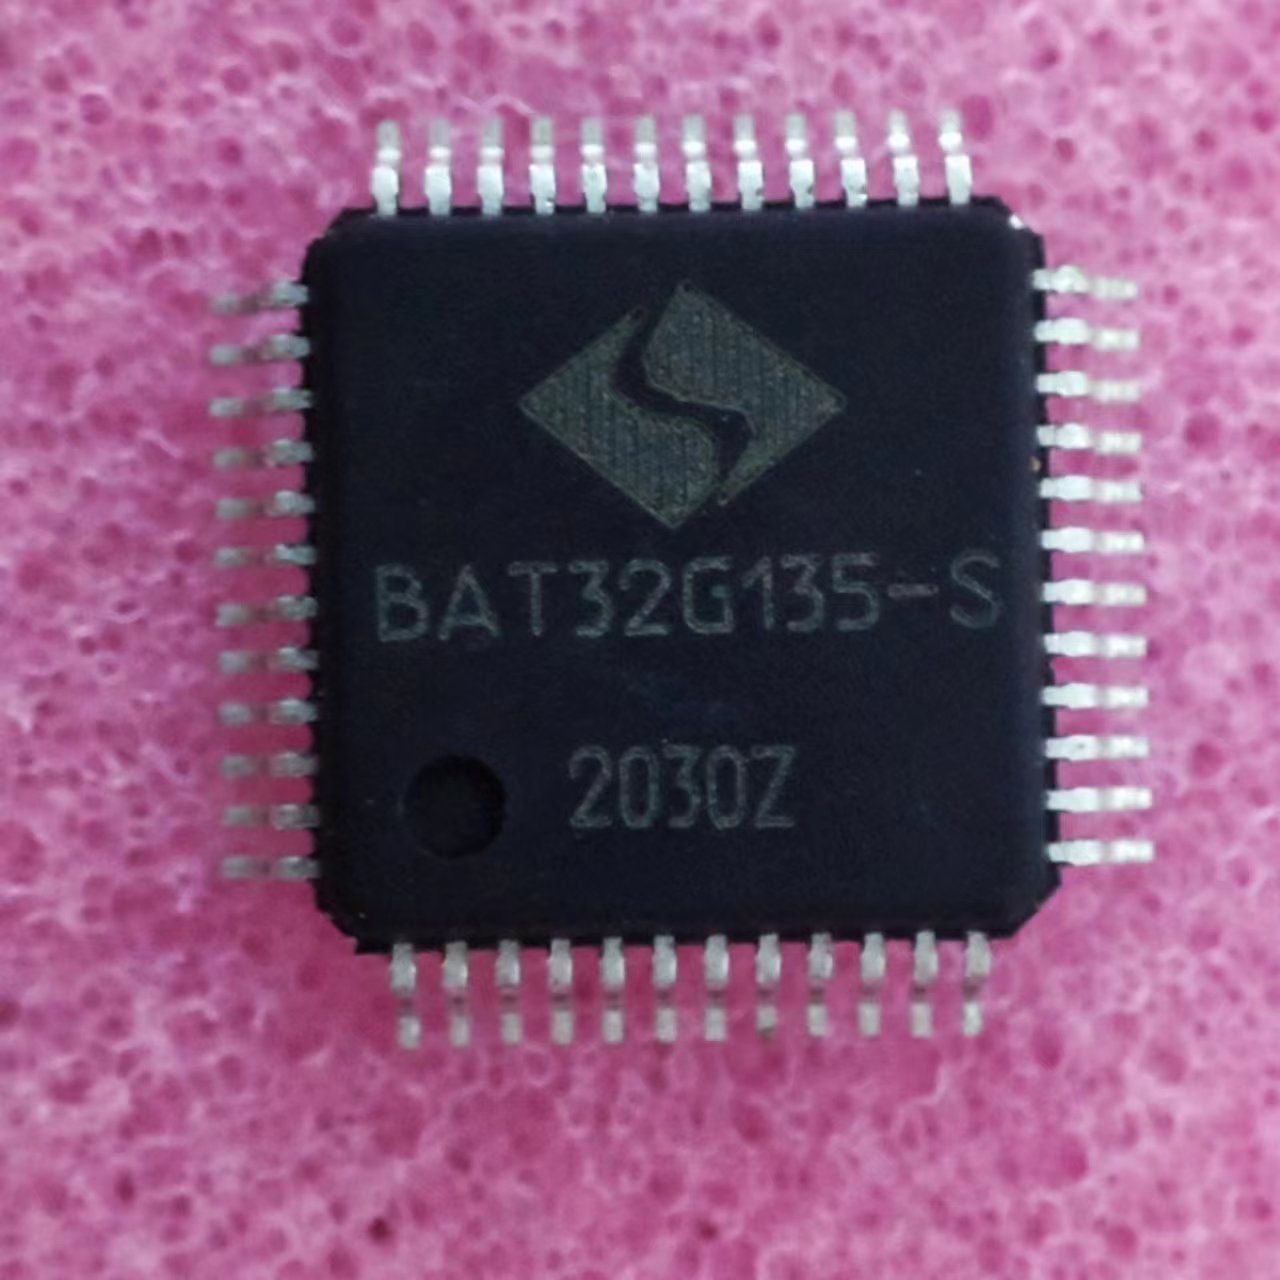 中微 BAT32G135-S LQFP48 32位低功耗MCU 原厂代理